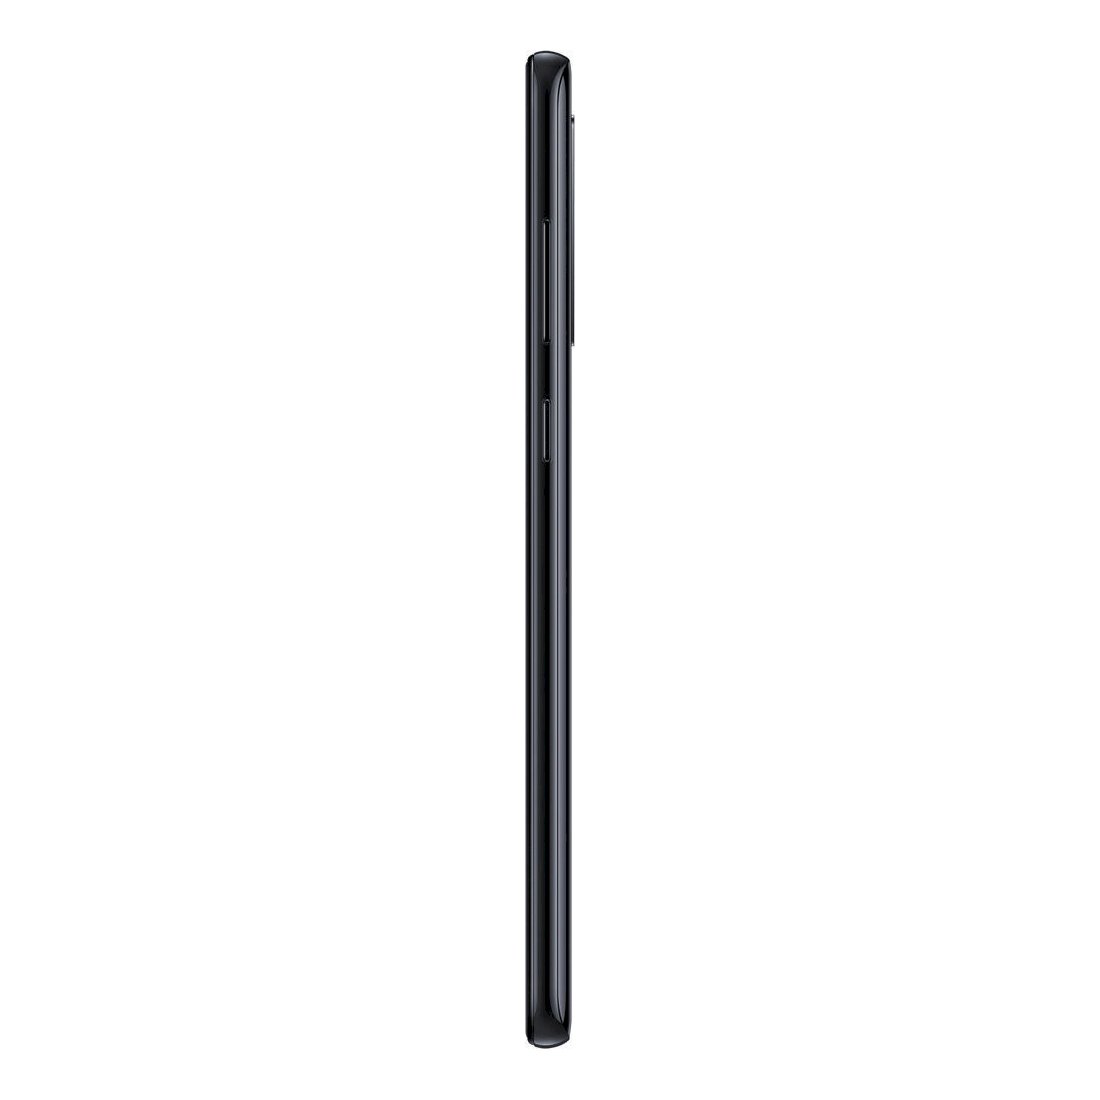 Samsung Galaxy A9 (2018) A920F Single Sim 128GB Black EU